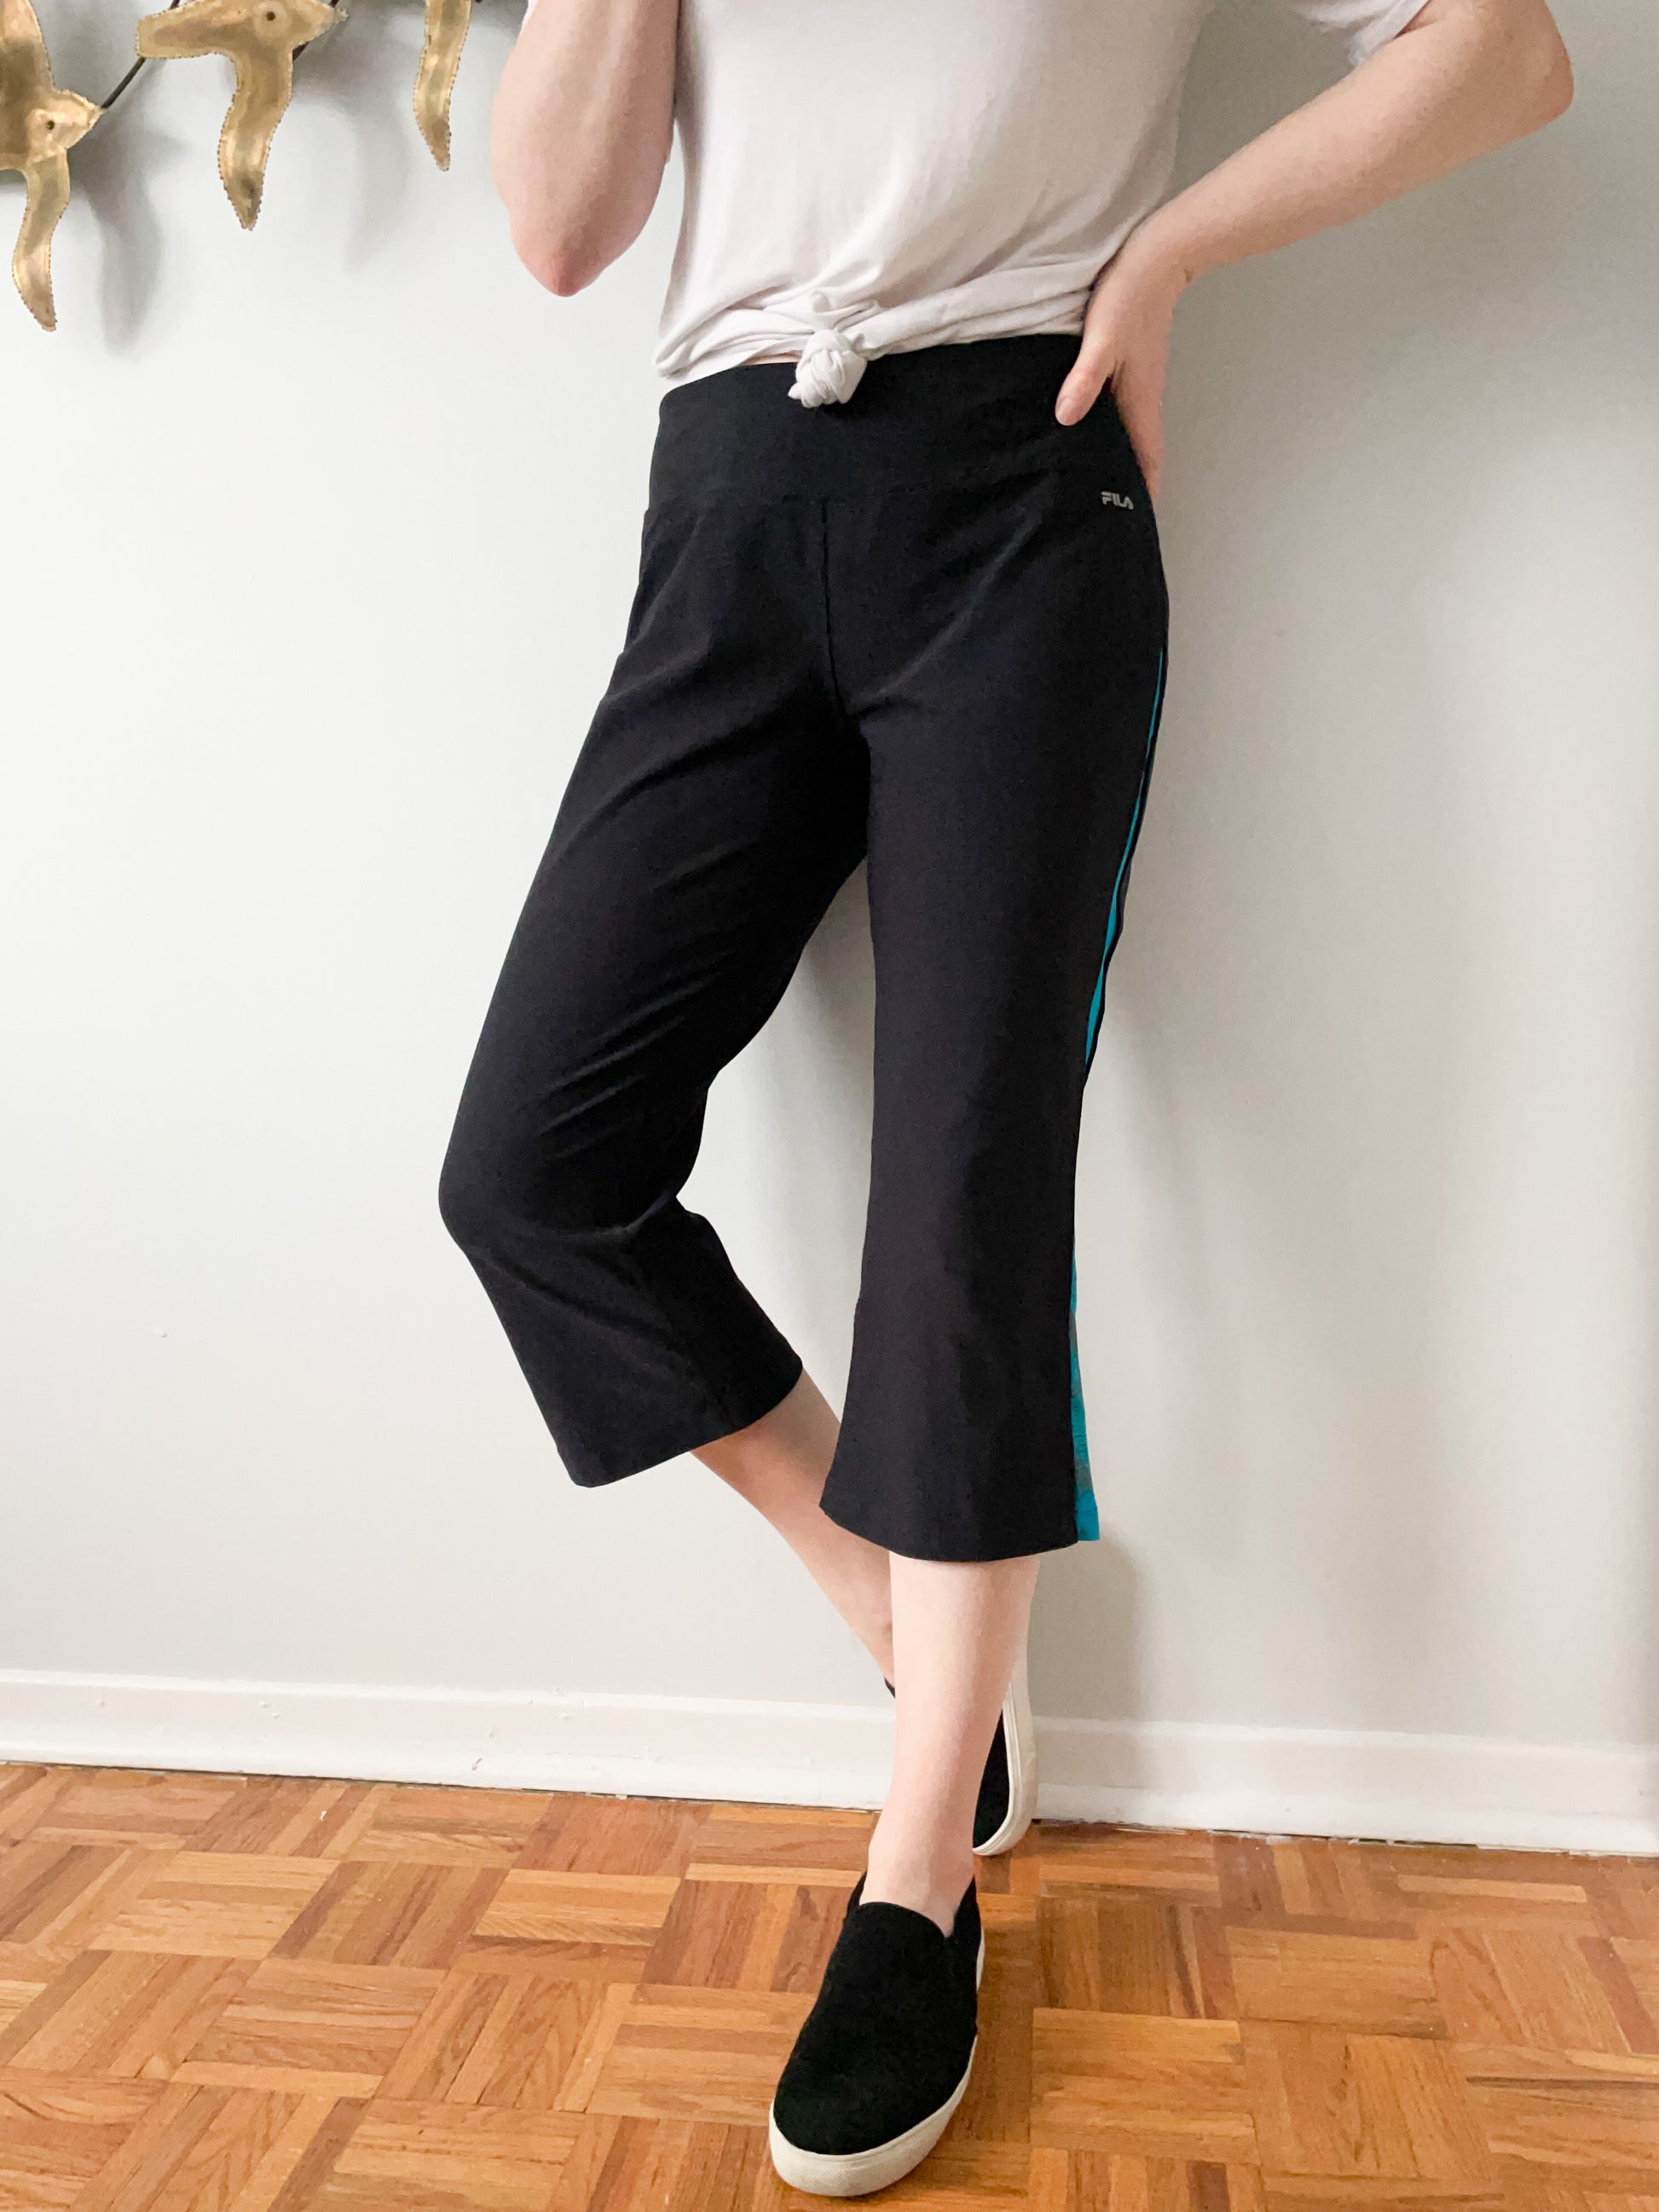 Fila Navy Blue Cropped Workout Pants - Large – Le Prix Fashion